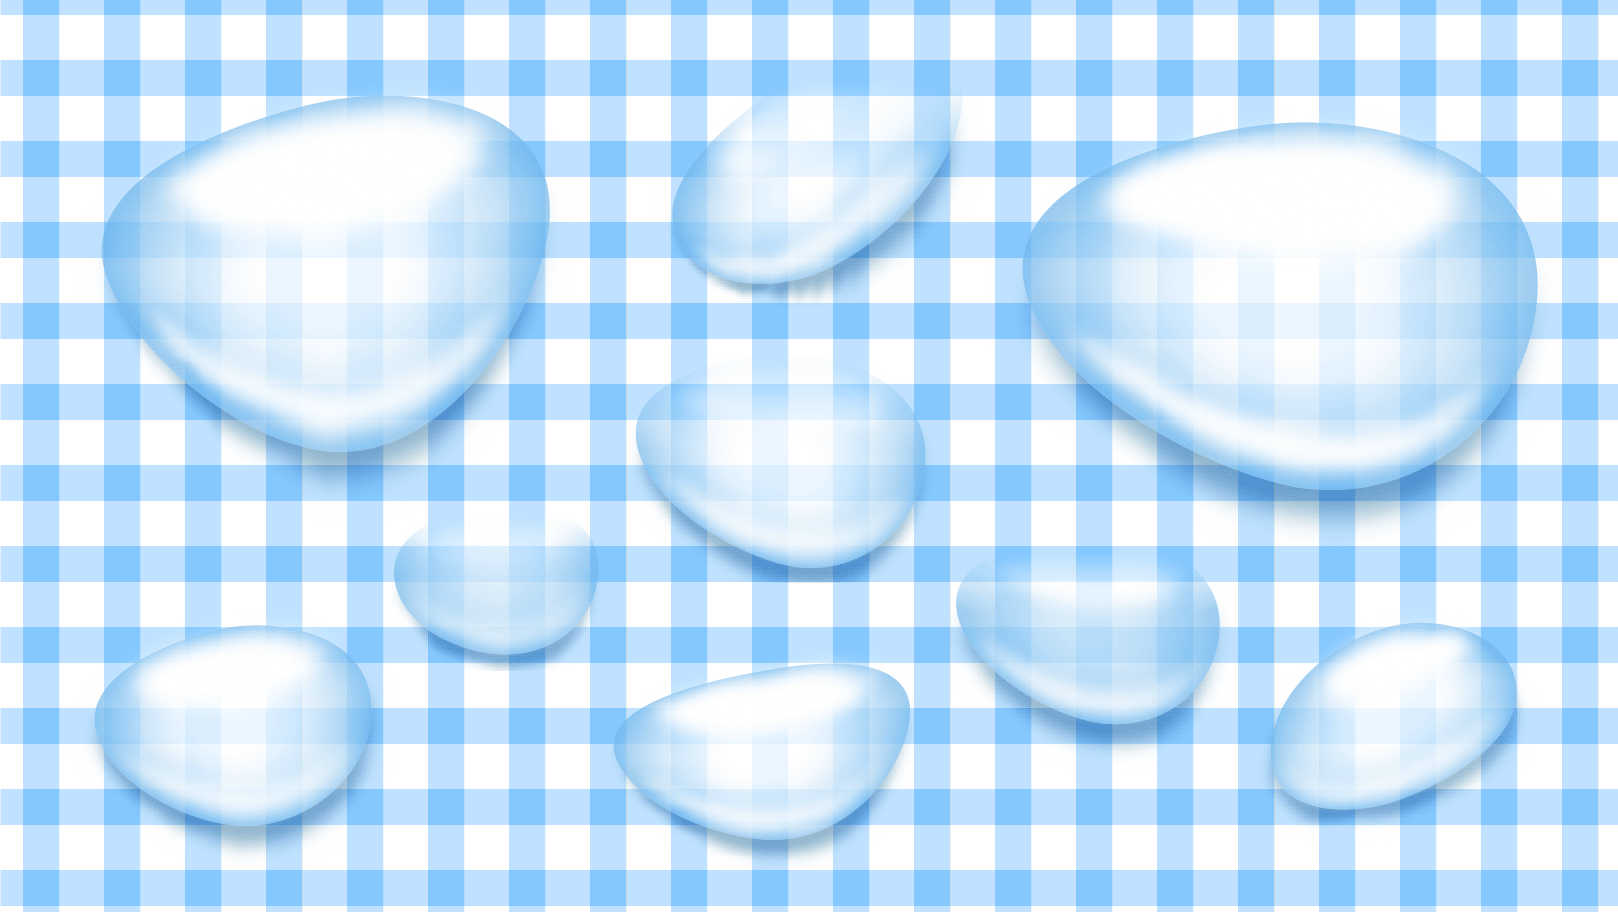 超簡単 Illustratorで透明な水滴の表現 動画解説 初心者ok イラストレーターの使い方